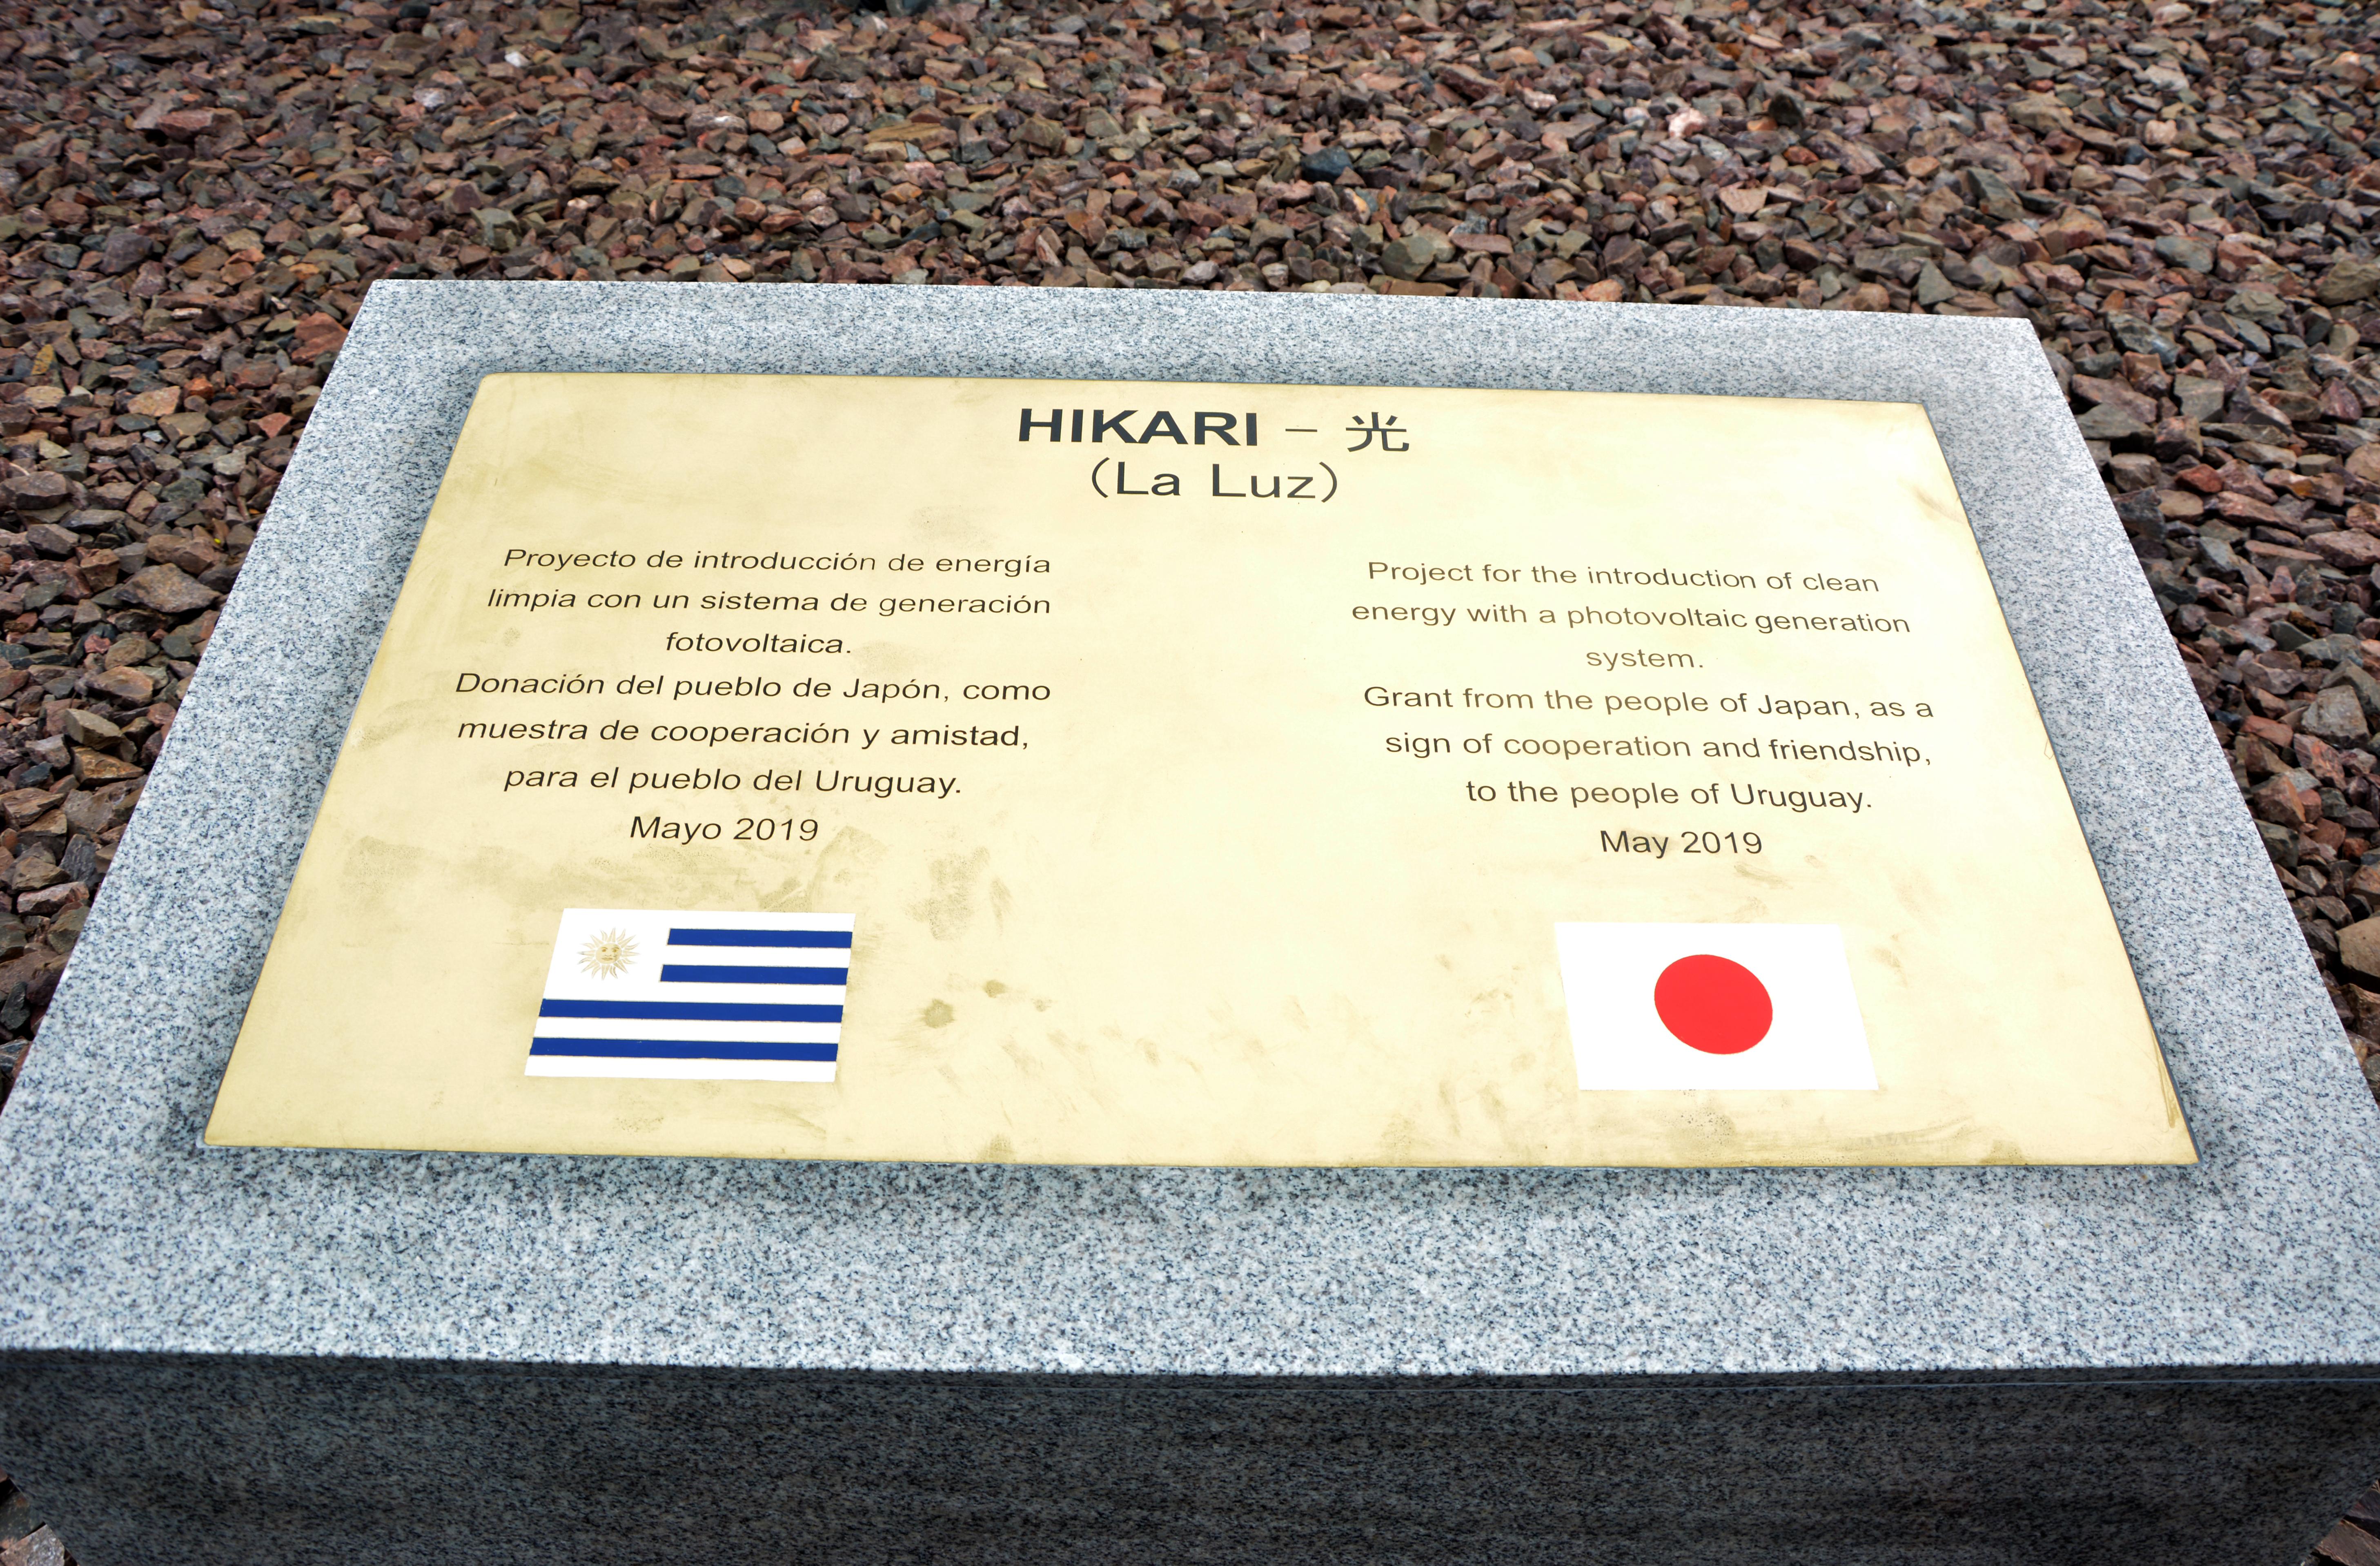 El nombre Hikari significa "La luz" en japonés